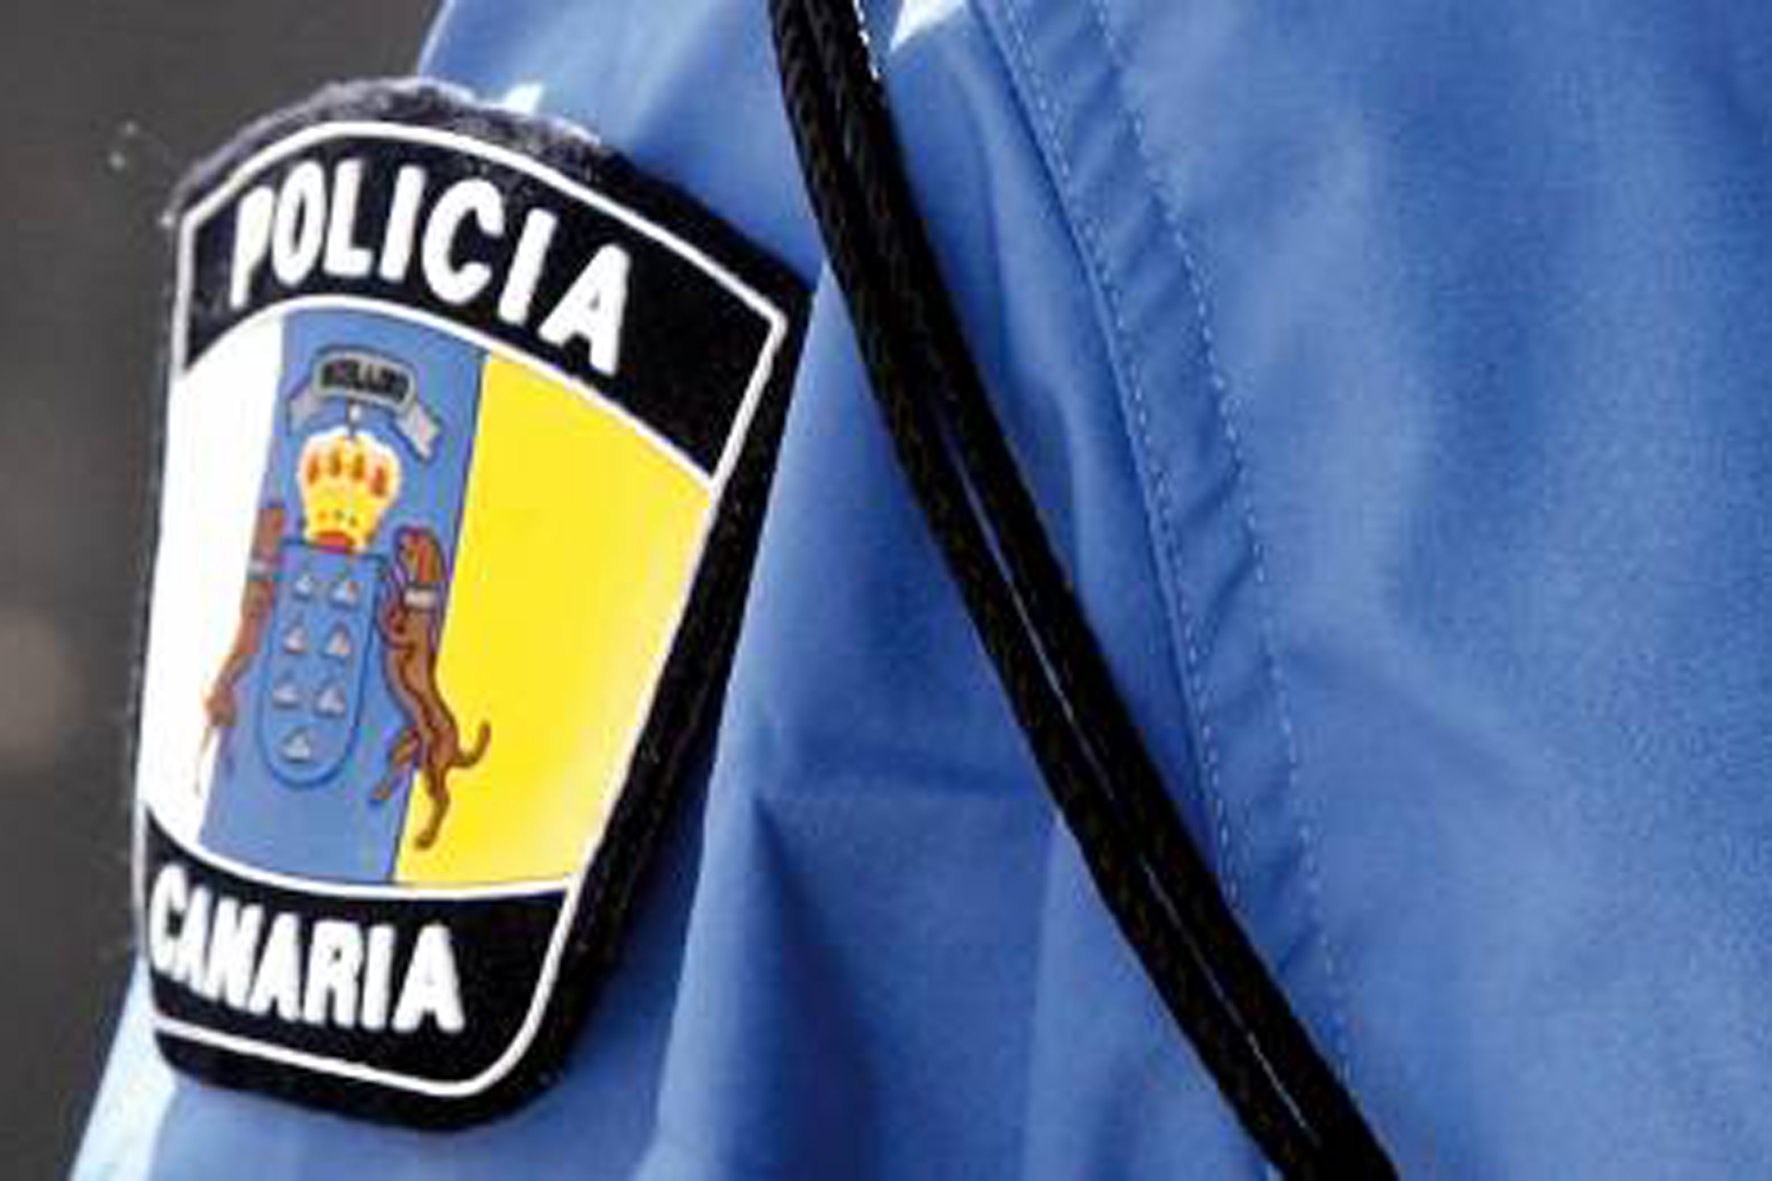 64 aspirantes participarán en el proceso de selección para 2 plazas de Policía Local de Valverde